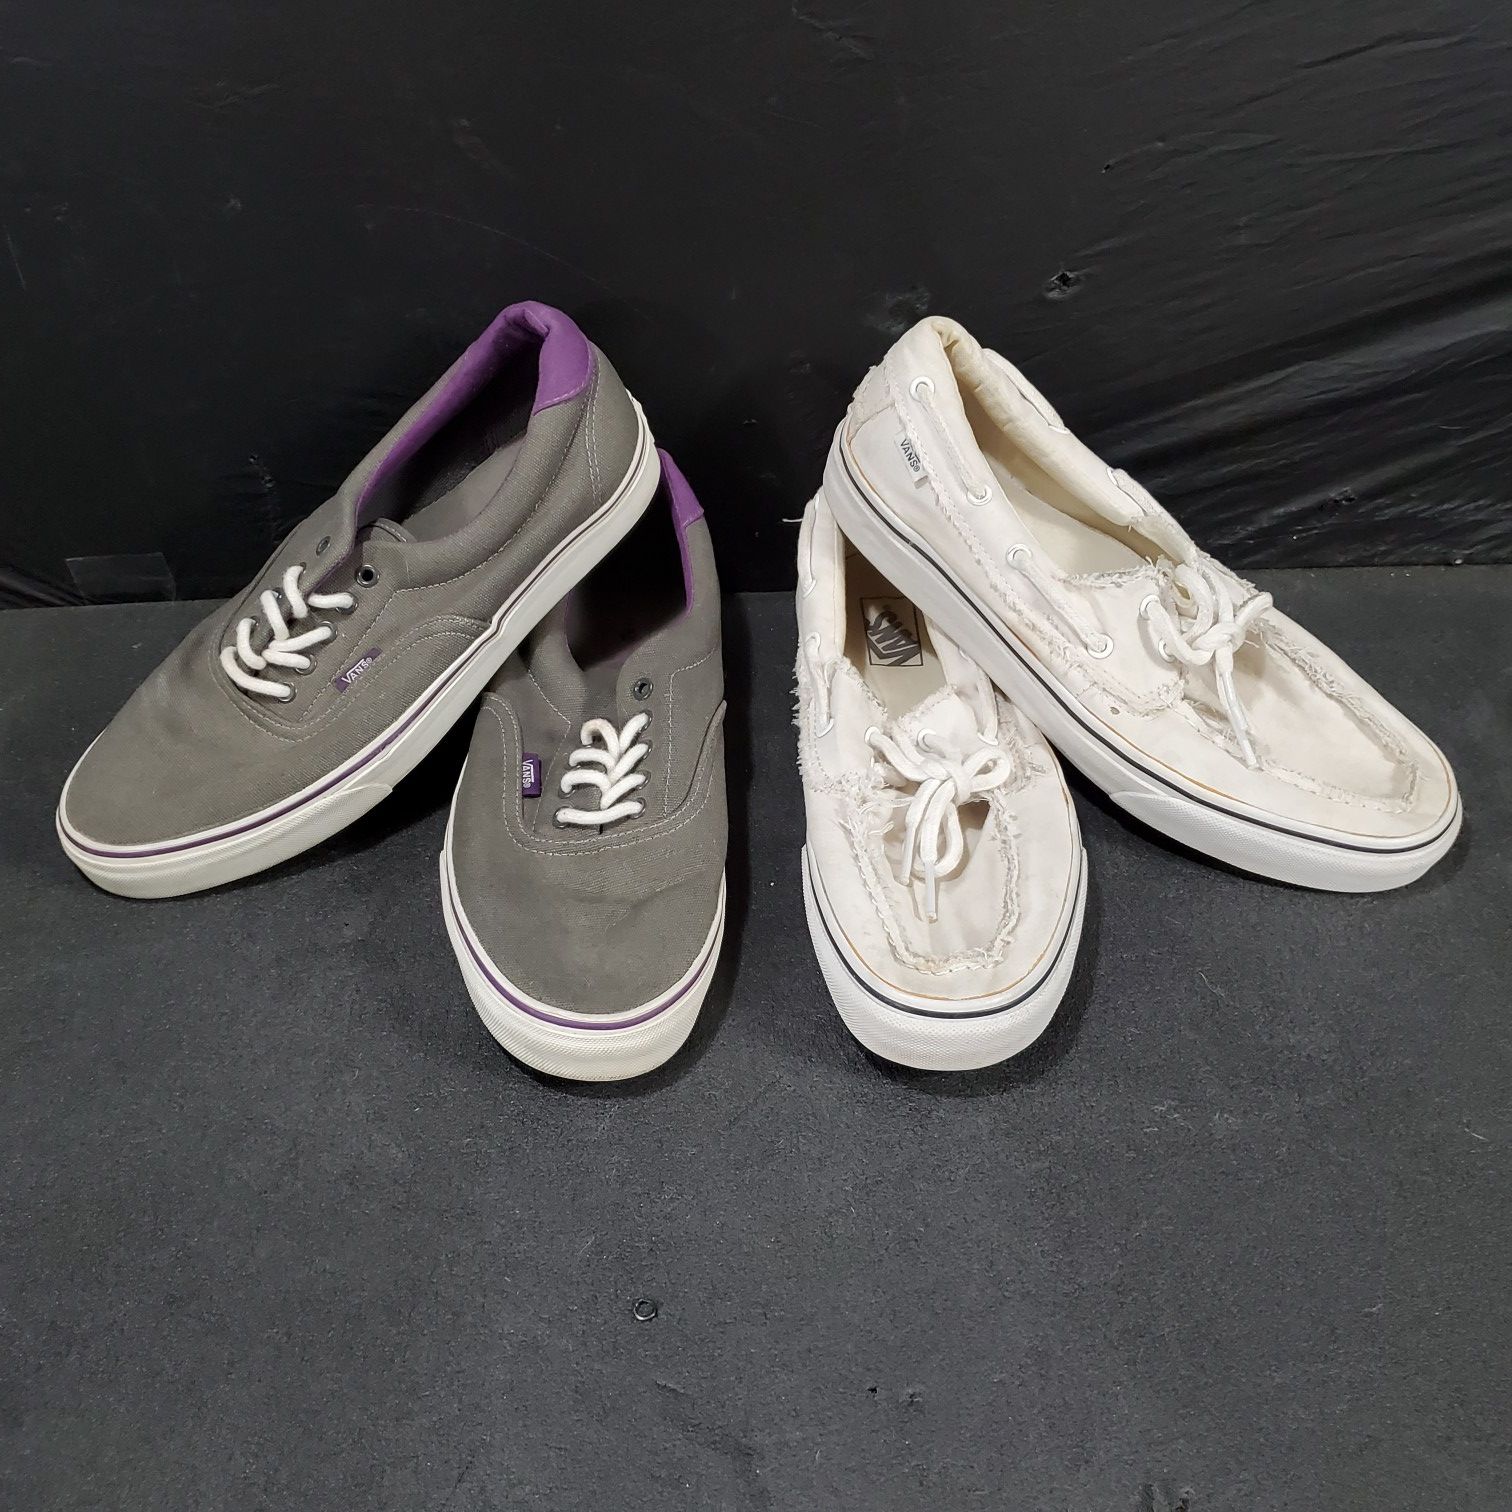 1 Pairs Of Used Men's Sz 11.5 Vans Shoes Purple Grey .